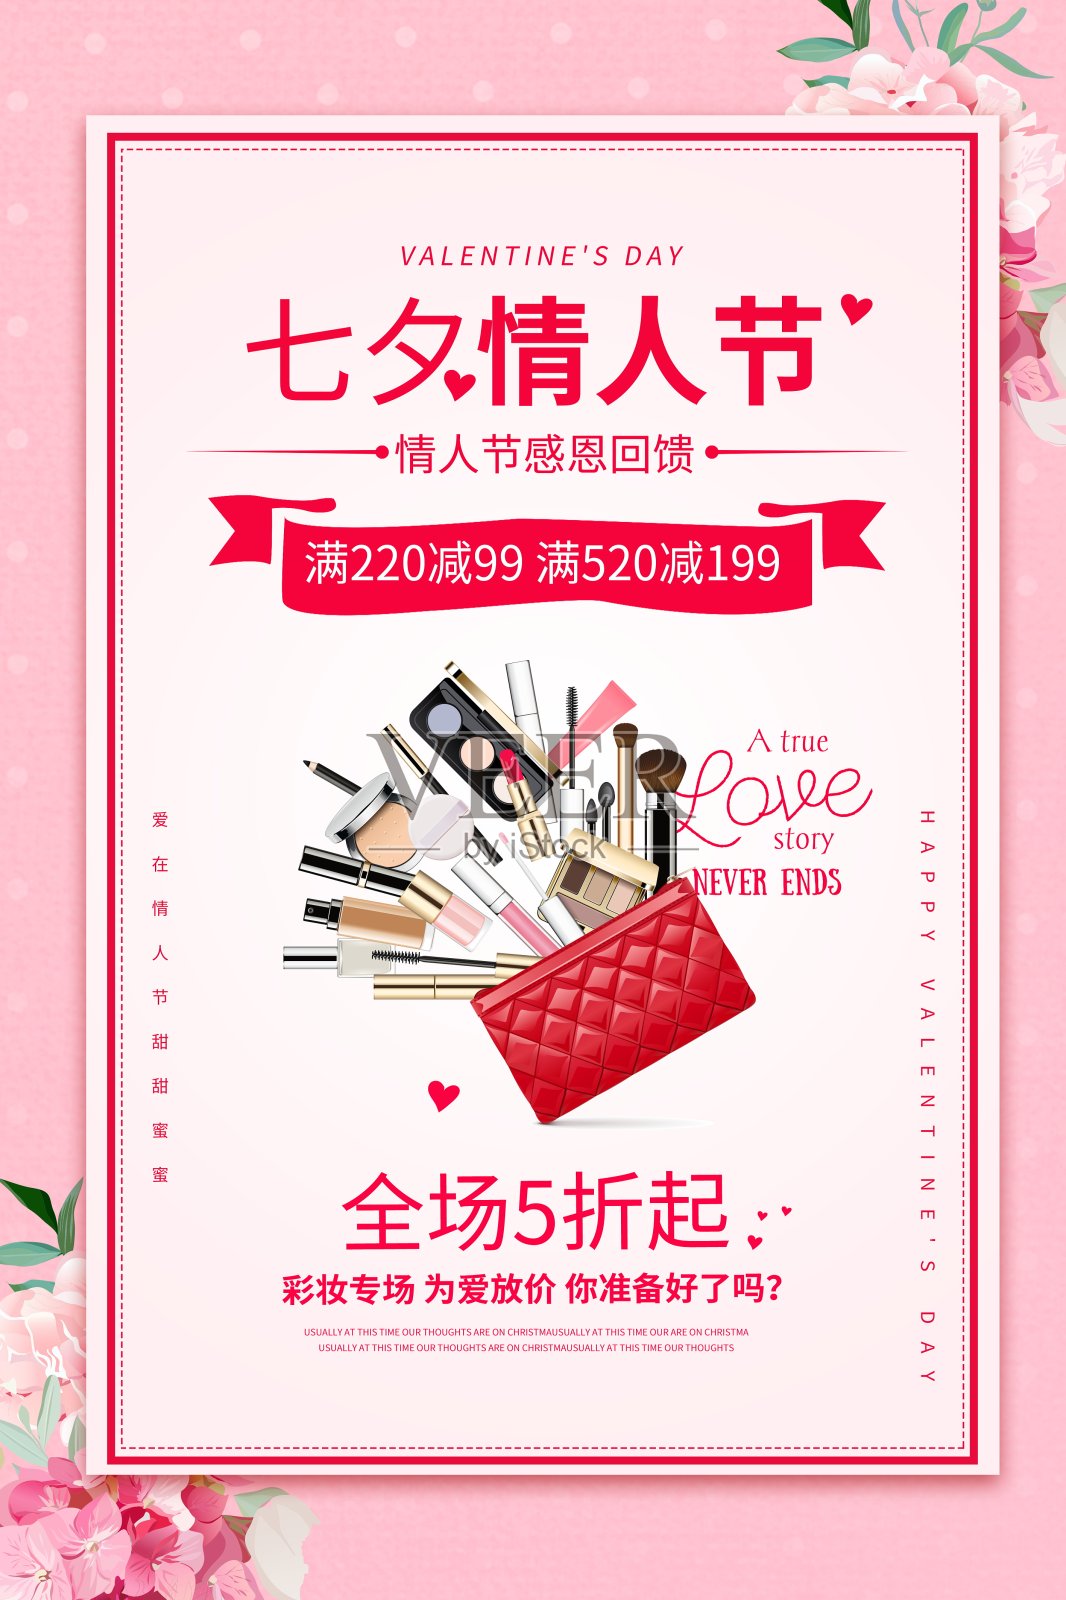 七夕情人节节日促销海报设计模板素材